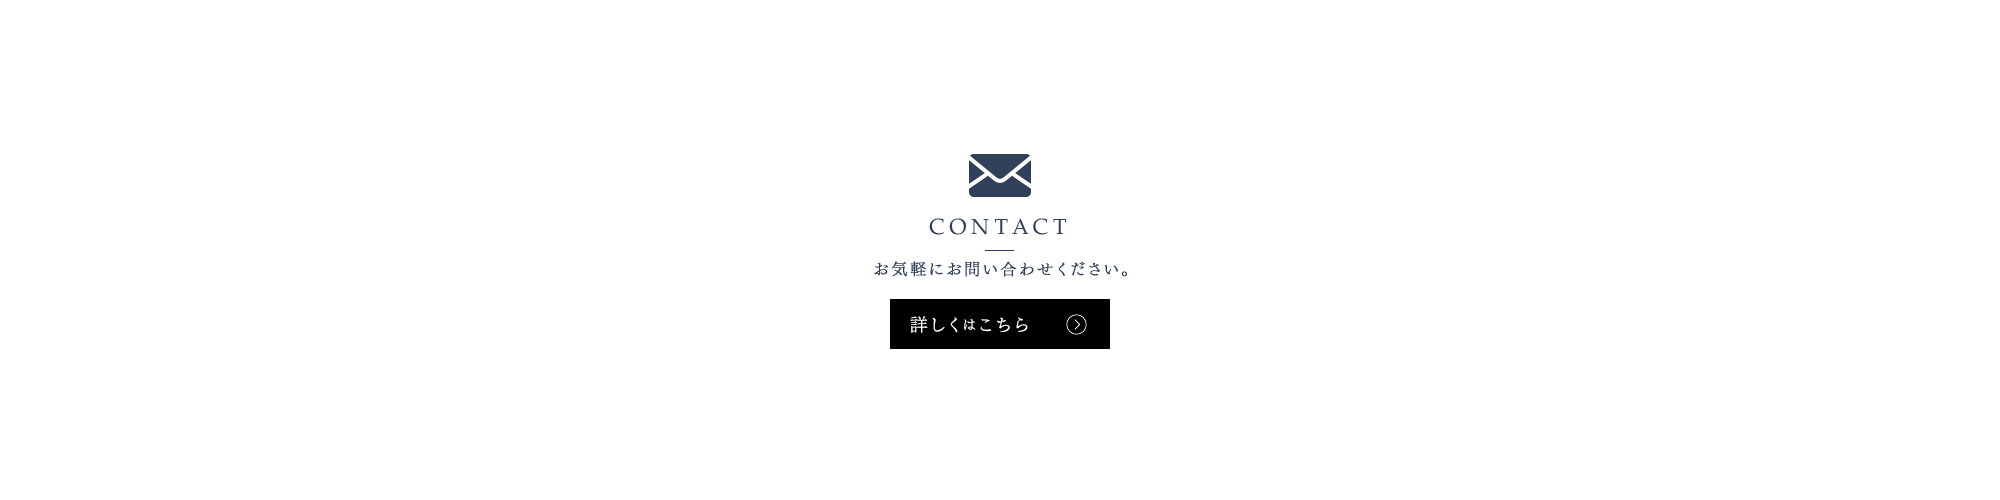 contact_bnr_para_top